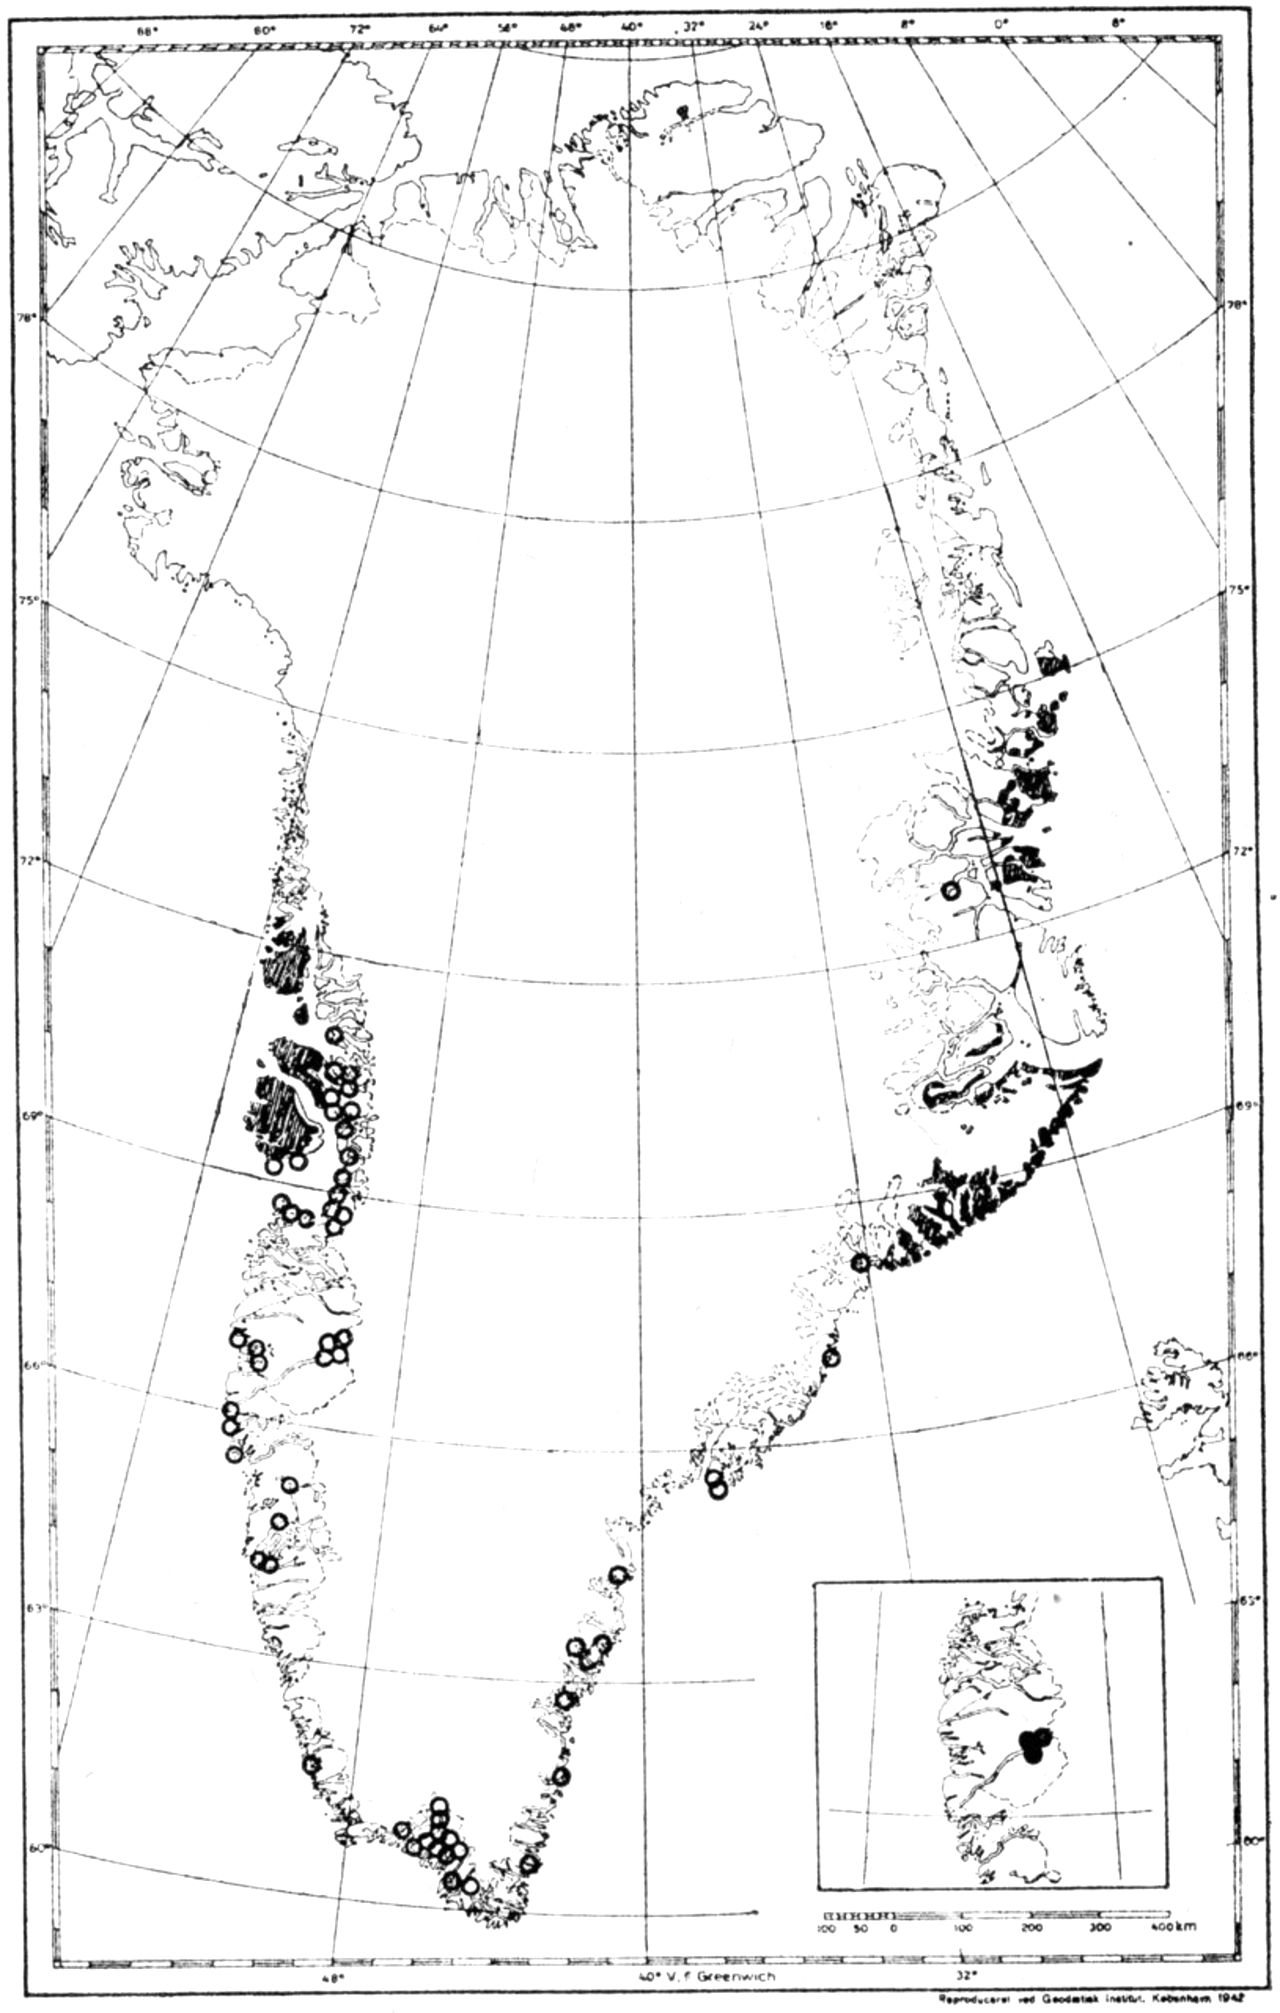 (Kort). Udbredelsen af hoved-star i forhold til Grønlands basaltområder (mørkt). Ringene angiver forekomster for en særlig underart af hovedstar, der er knyttet til næringsfattig bund og ikke synes at forekomme på basaltjord. Den typiske art findes kun på mere næringsrig bund i det kontinentale Vestgrønland (lille kort).